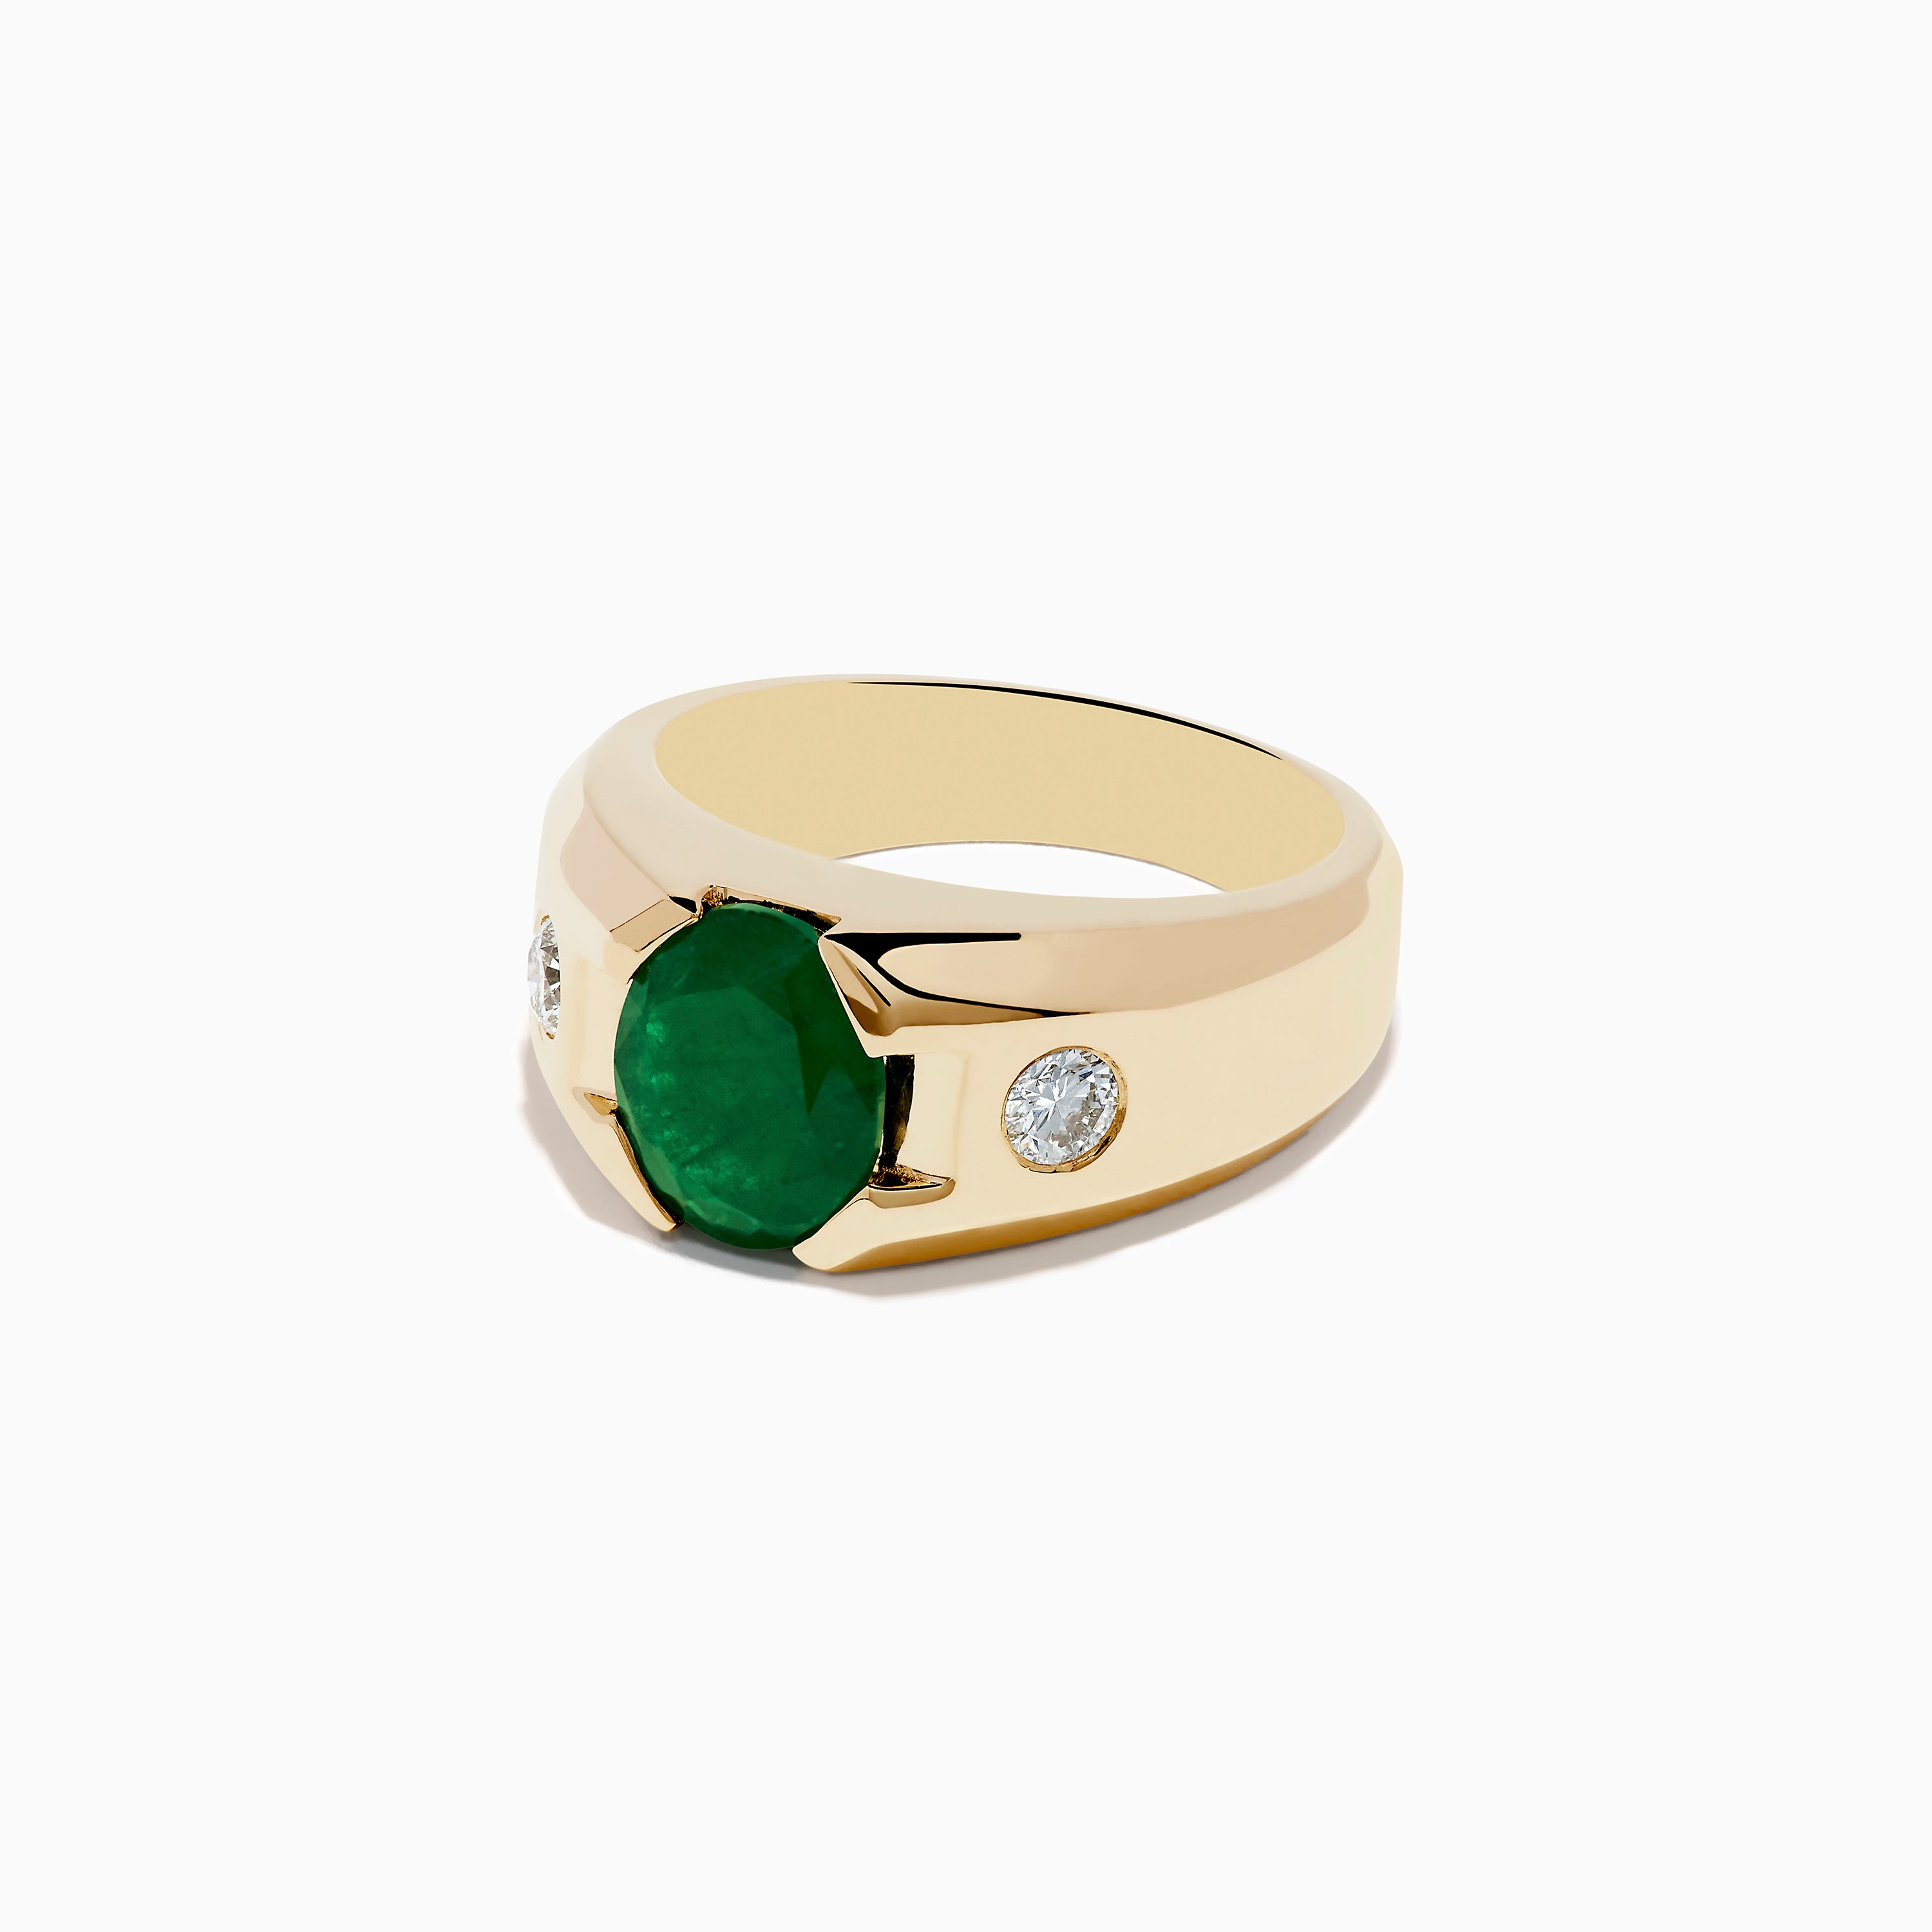 Buy Men's Emerald Rings | GLAMIRA.co.uk